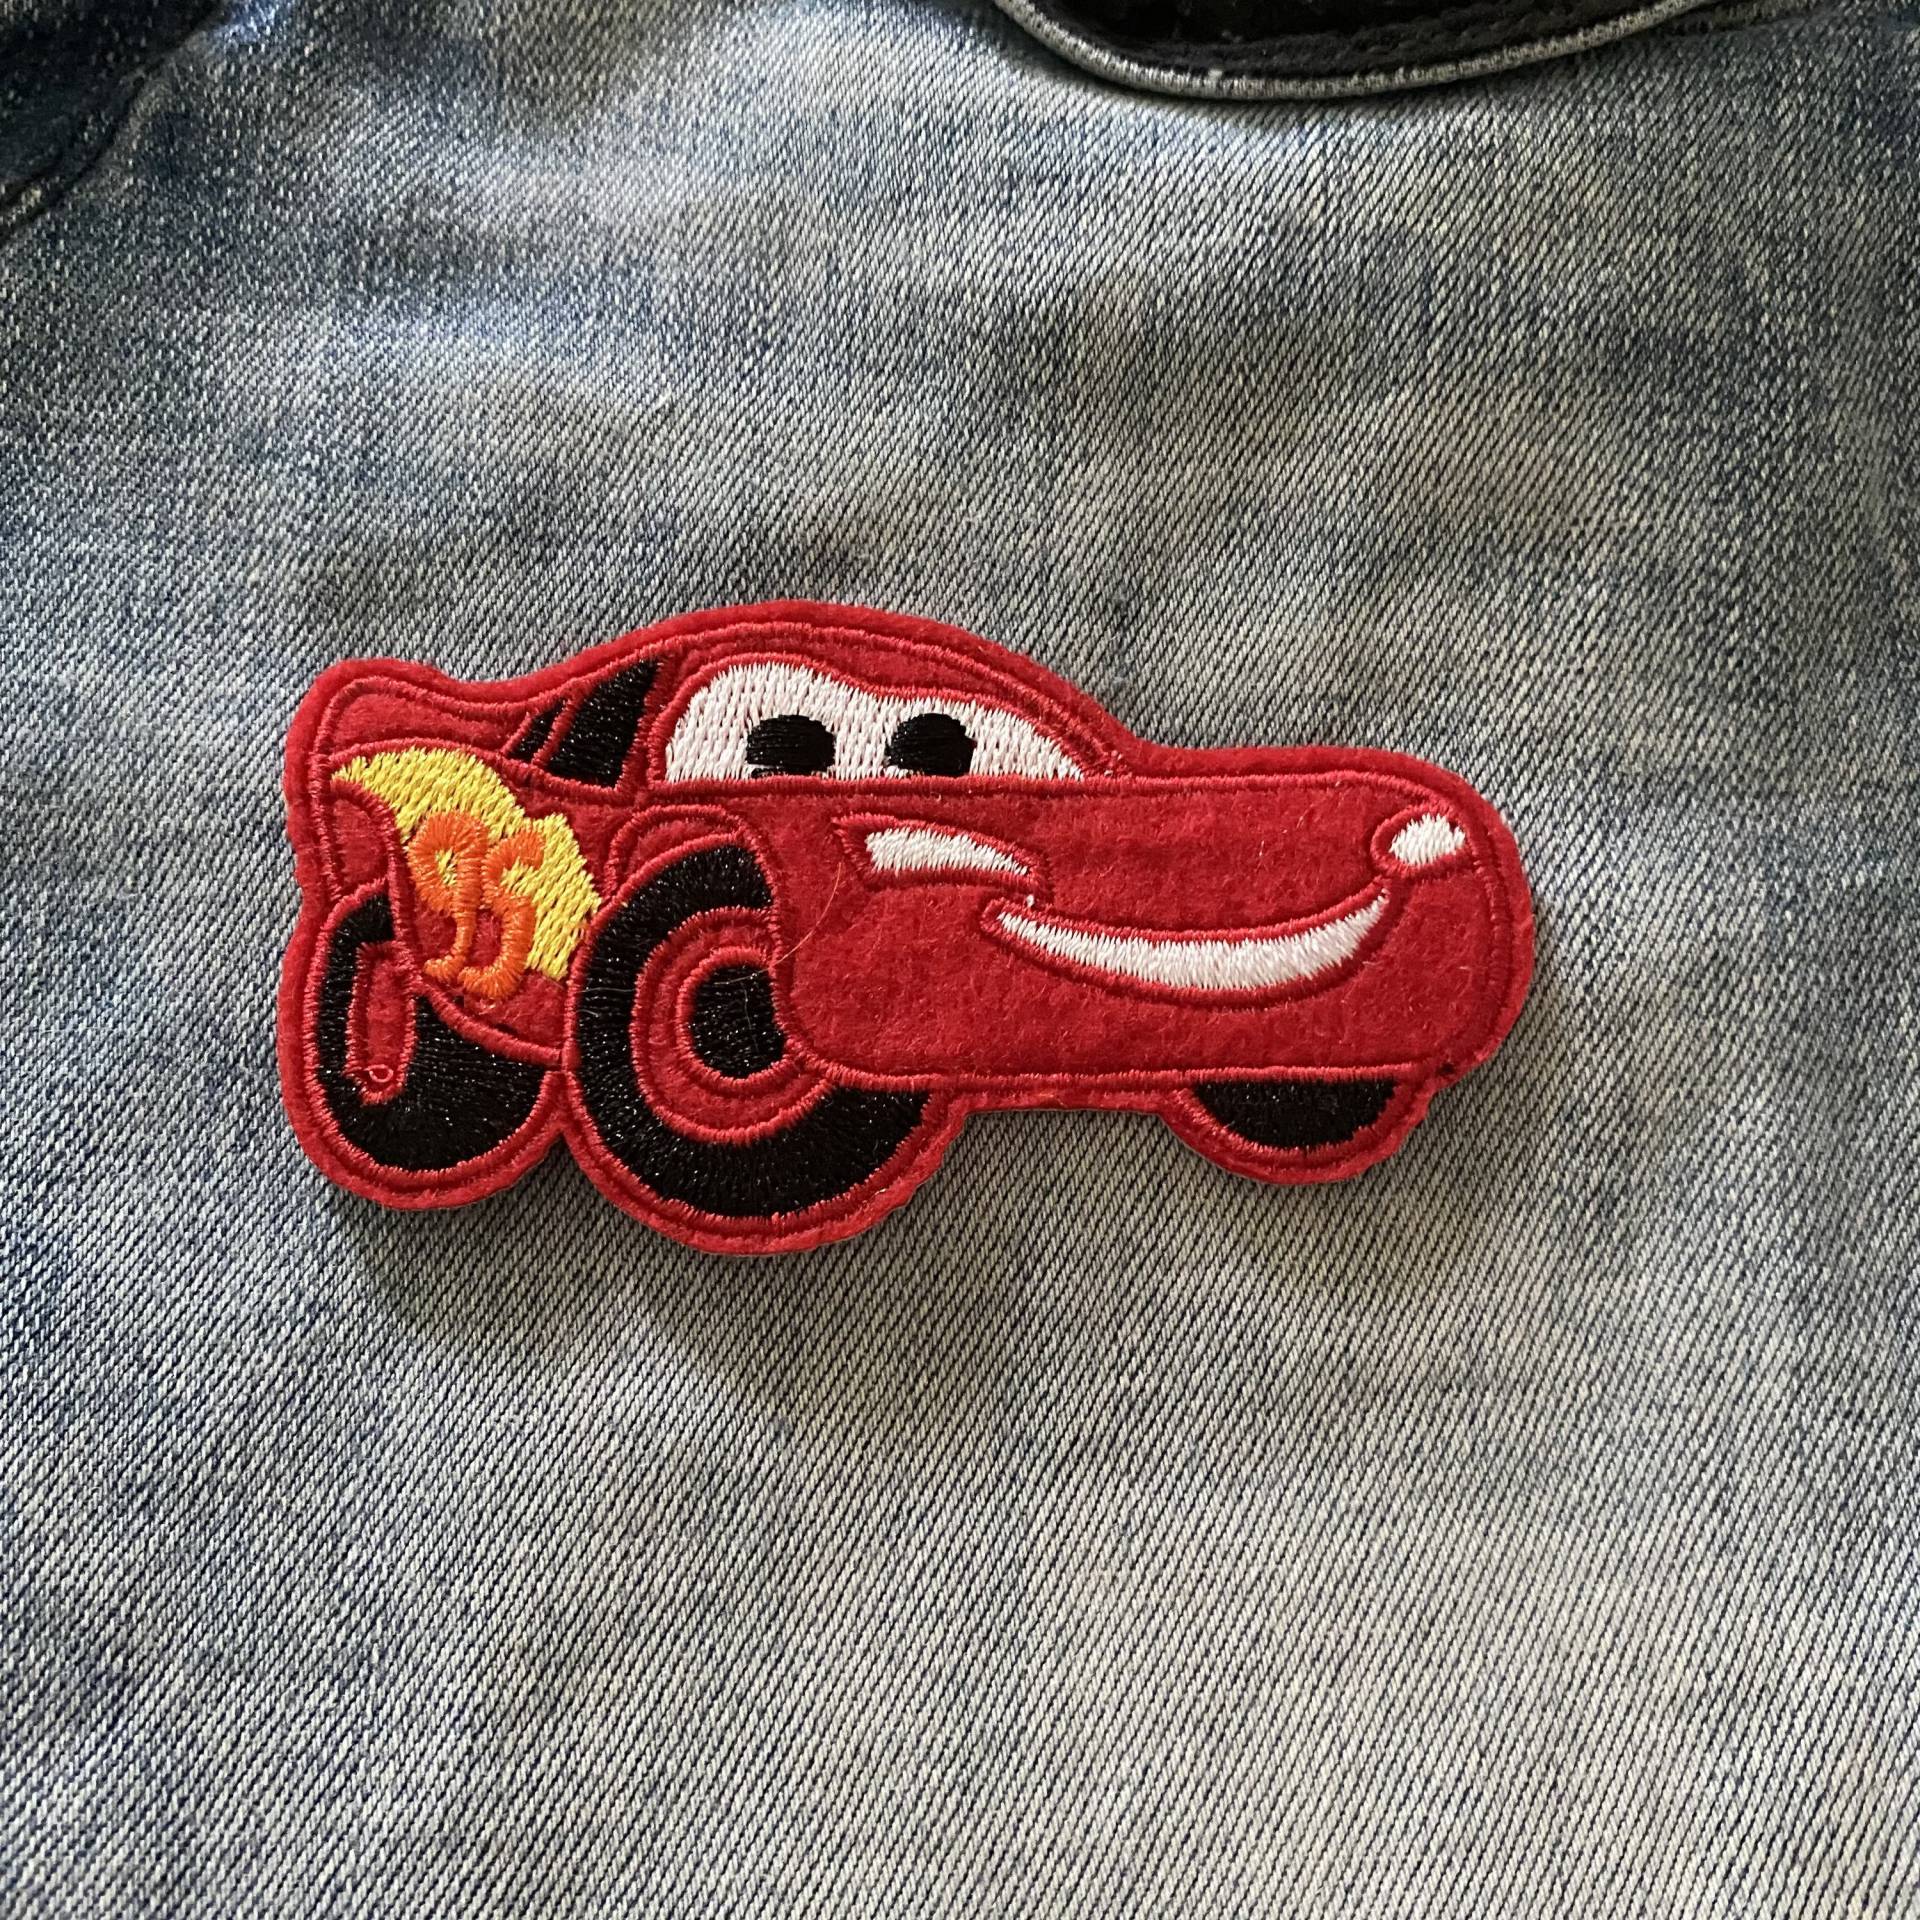 Lightning Mcqueen Cars Kinderfilm Aufnäher Für Denim Jacke Kinder Cartoon Patch Gestickt Applikation Pixar Autos von IronOnPatchesQLD